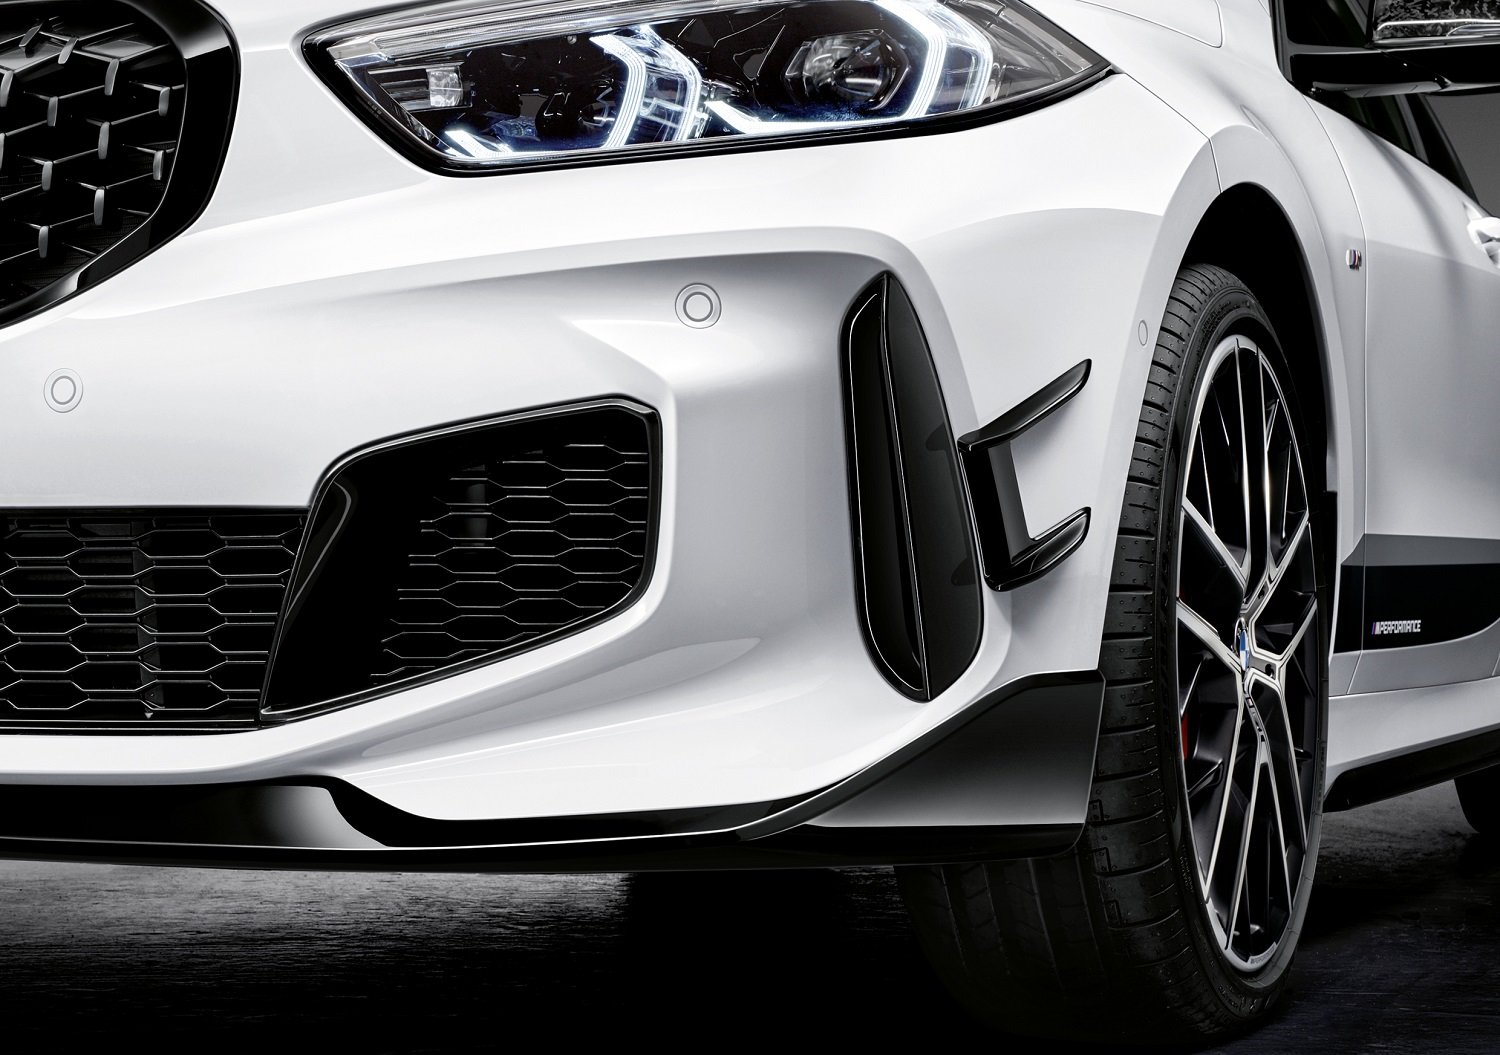 V okamžiku, kdy nové BMW řady 1 vstoupí na trh, bude pro něj k dispozici i rozsáhlá nabídka exkluzivních dílů M Performance Parts, zaměřená na optické zvýraznění sportovního charakteru, stejně jako dynamického potenciálu